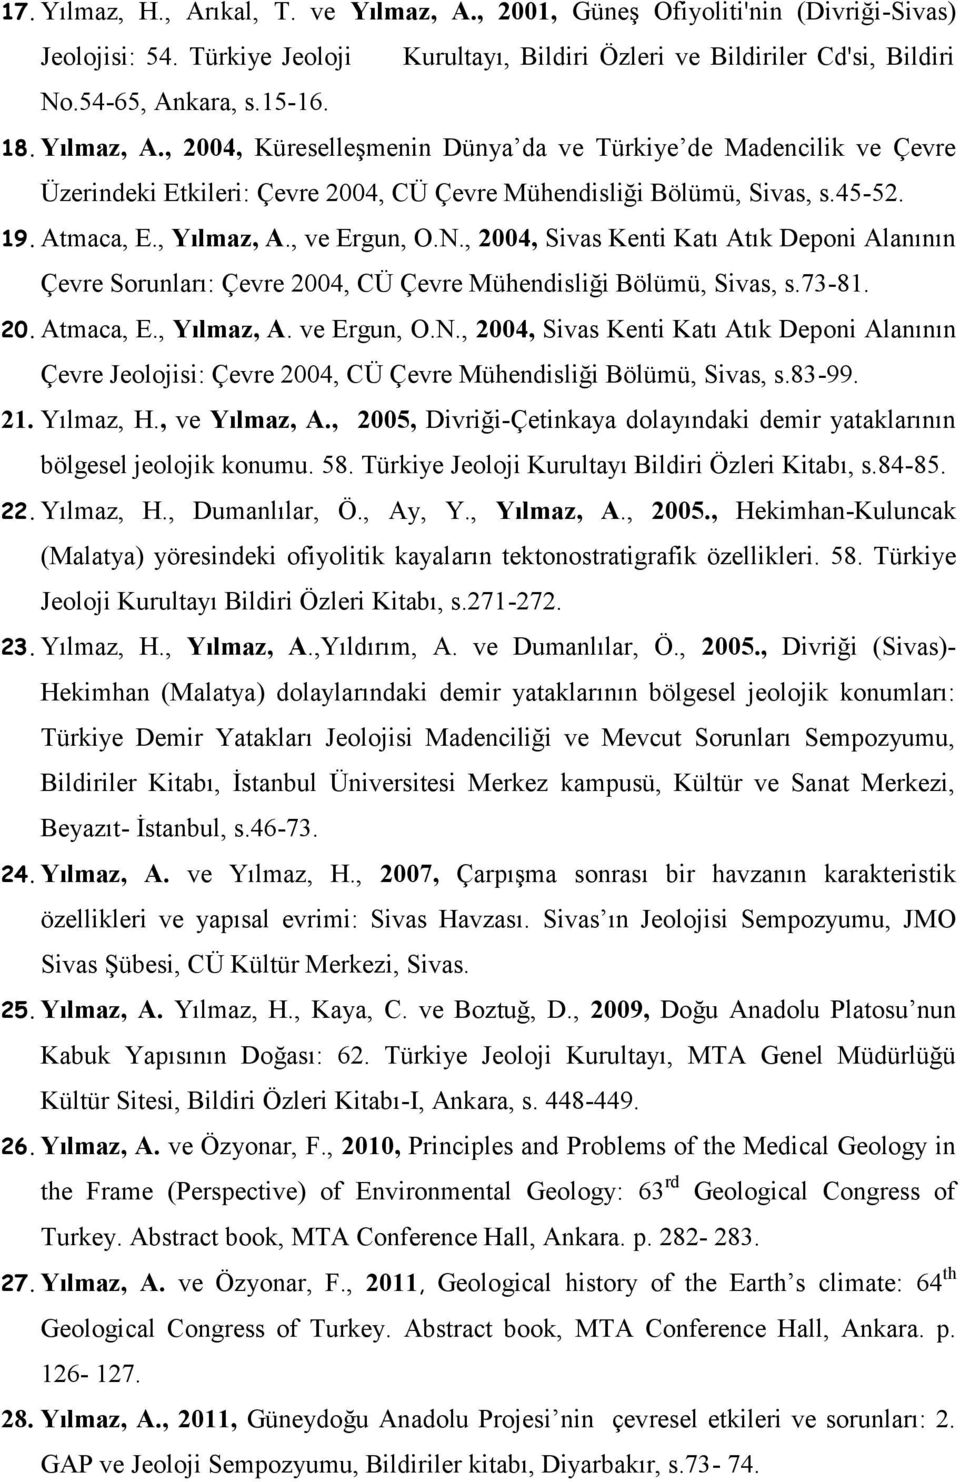 N., 2004, Sivas Kenti Katı Atık Deponi Alanının Çevre Sorunları: Çevre 2004, CÜ Çevre Mühendisliği Bölümü, Sivas, s.73-81. 20. Atmaca, E., Yılmaz, A. ve Ergun, O.N., 2004, Sivas Kenti Katı Atık Deponi Alanının Çevre Jeolojisi: Çevre 2004, CÜ Çevre Mühendisliği Bölümü, Sivas, s.